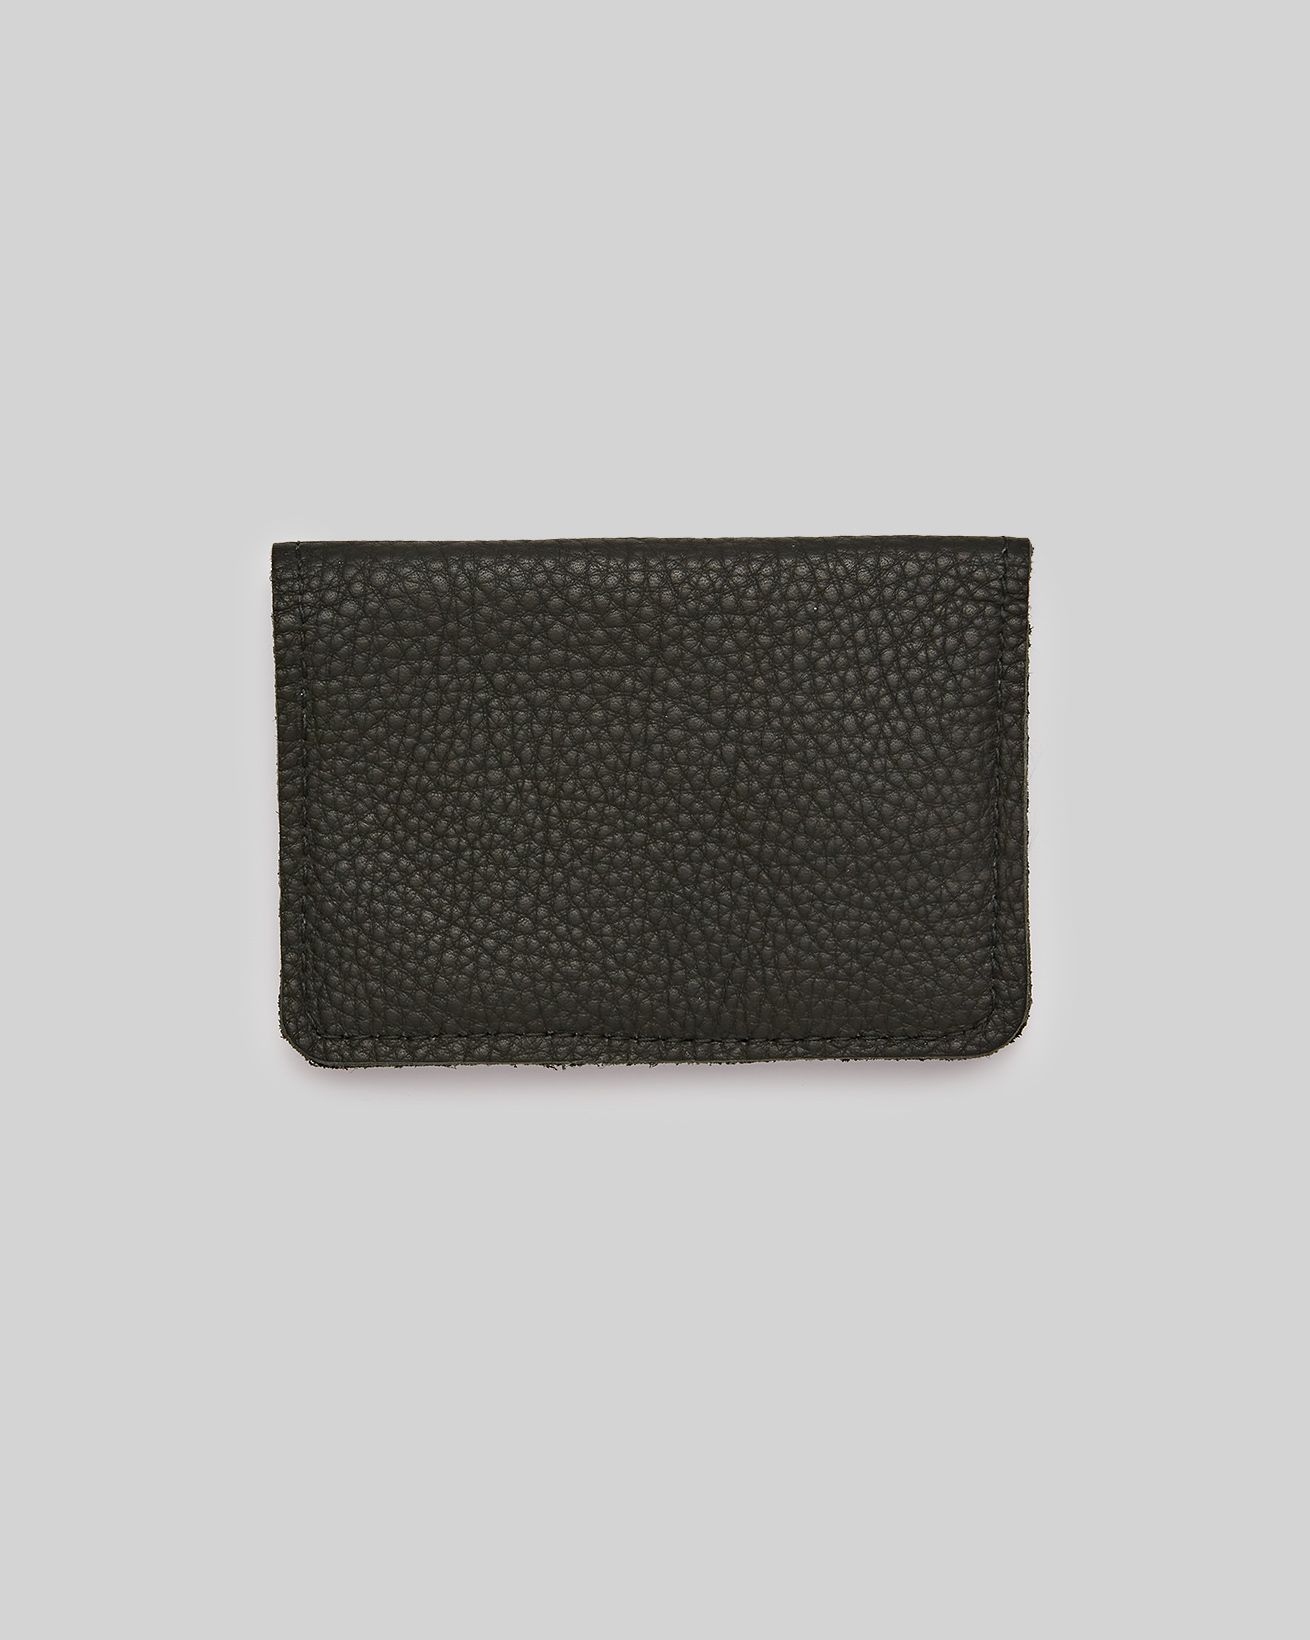 7887_soft-leather-card-holder_black_front_web.jpg